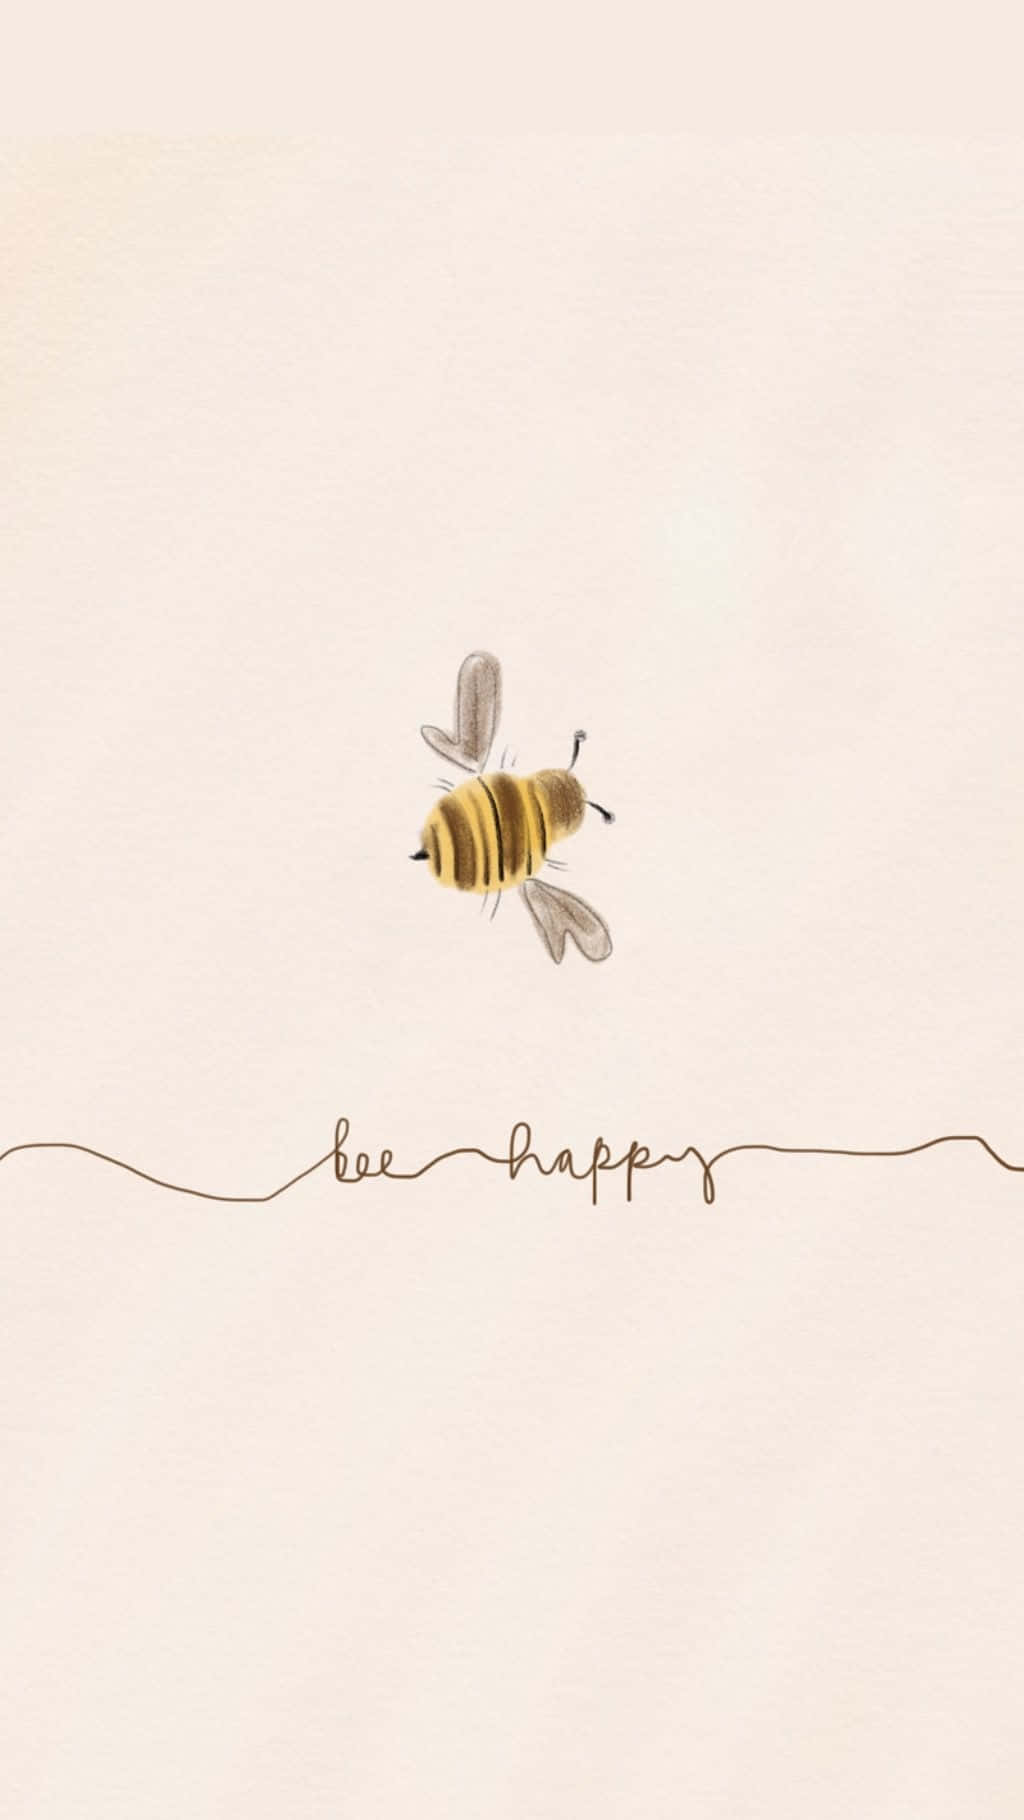 Vintage Bee Happiness Artwork Wallpaper